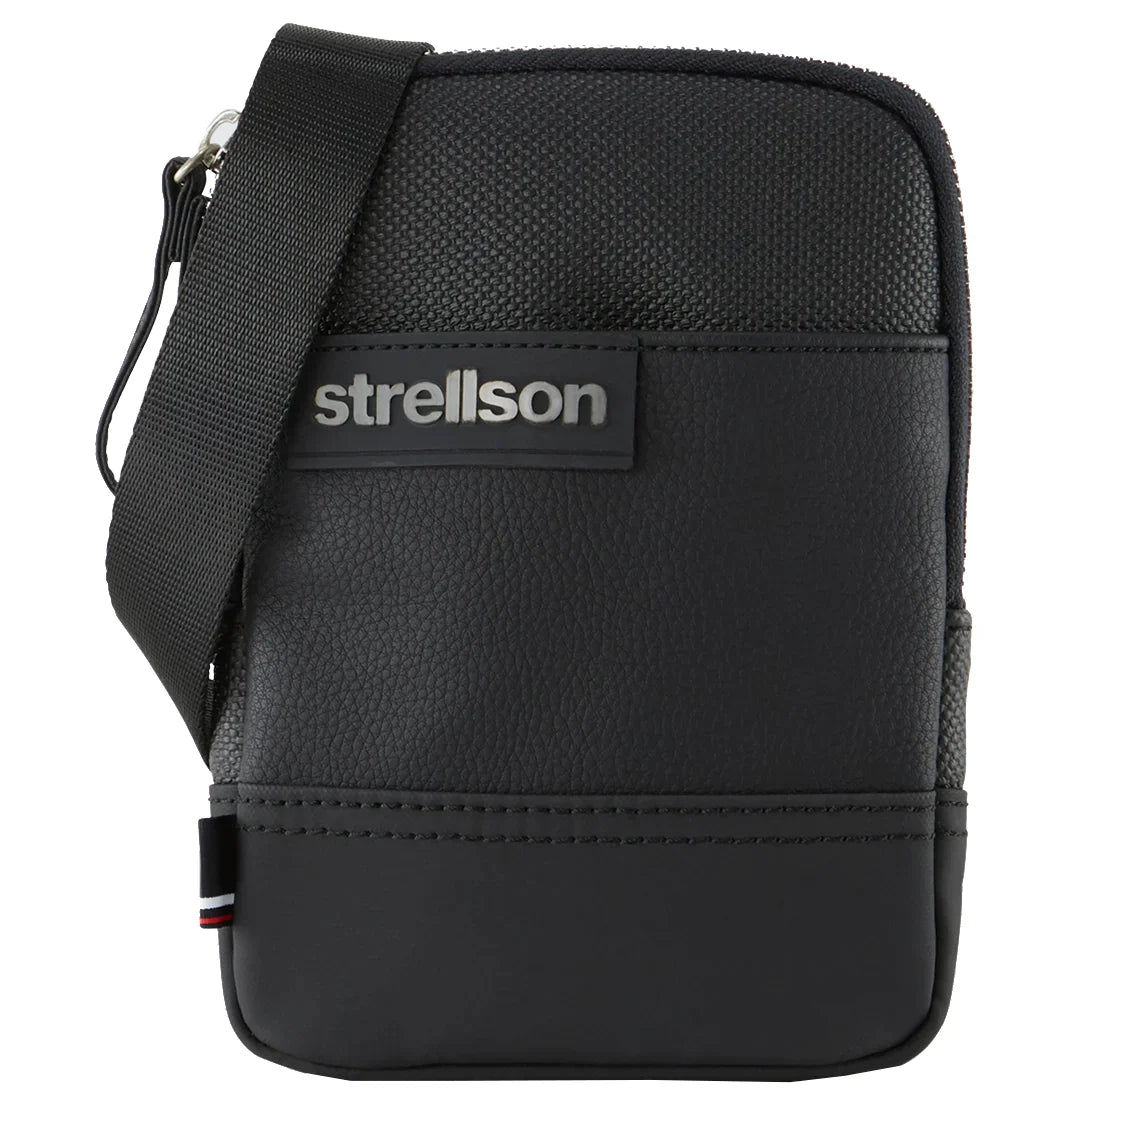 Strellson Royal Oak Shoulderbag XSVZ 1 18 cm - Black